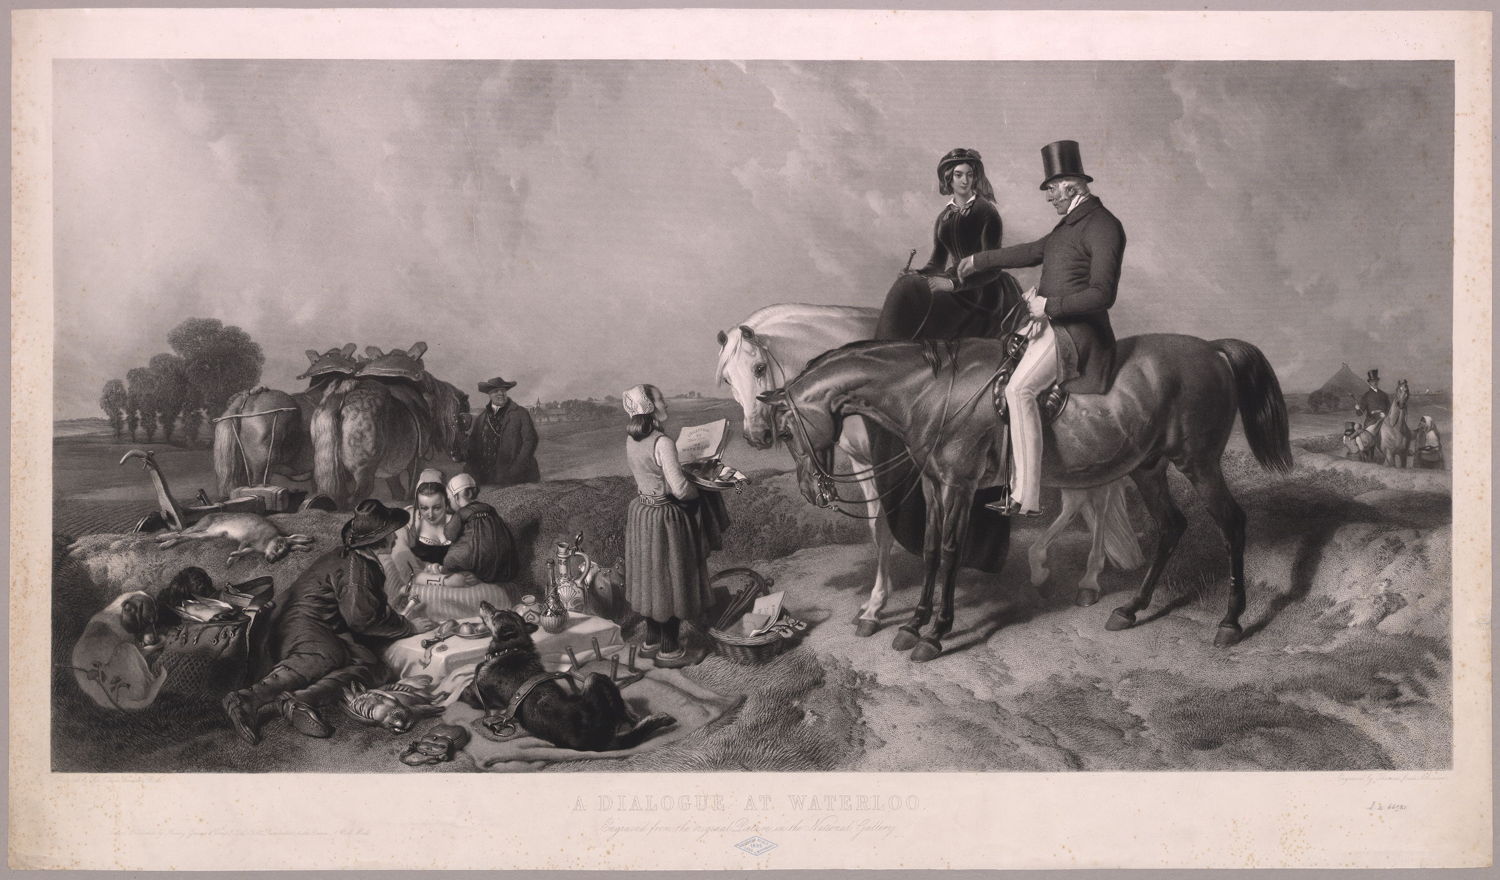 A dialogue at Waterloo, gegraveerd door Thomas-Lewis Atkinson, naar het originele schilderij van Sir Edwin Henry Landseer
© Koninklijke Bibliotheek van België